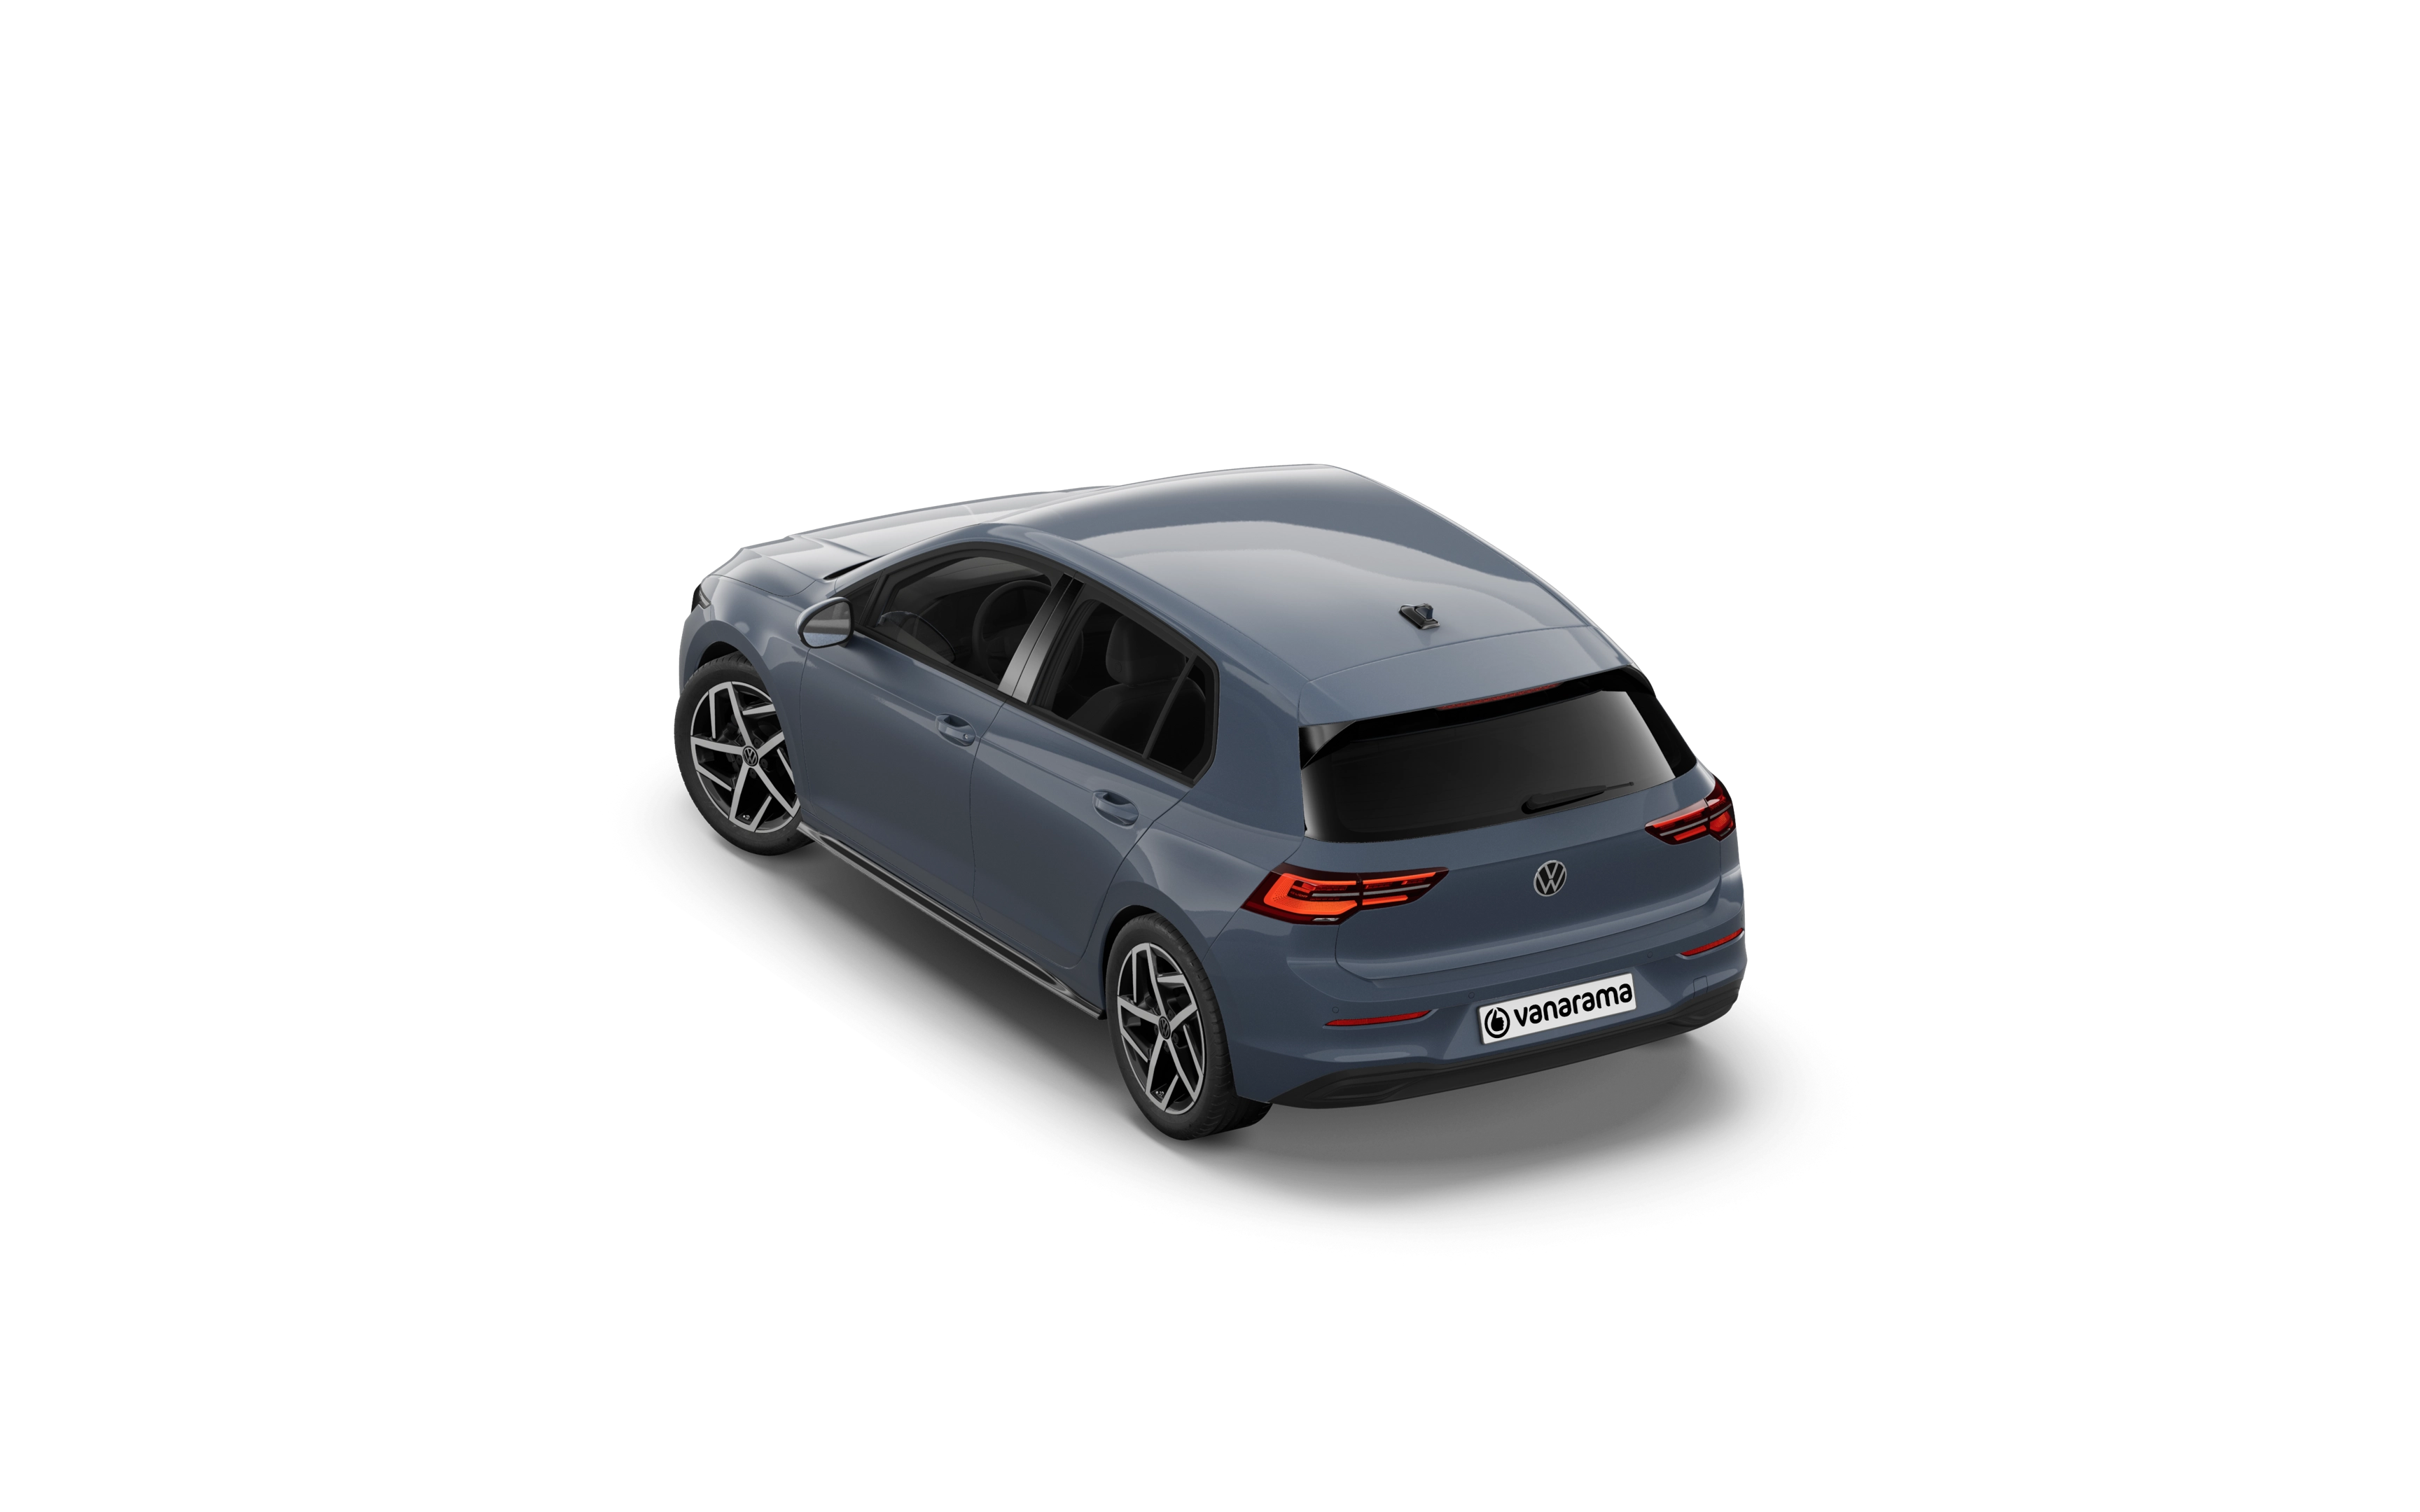 Volkswagen golf hatchback 2.0 tdi 150 style 5 doors dsg